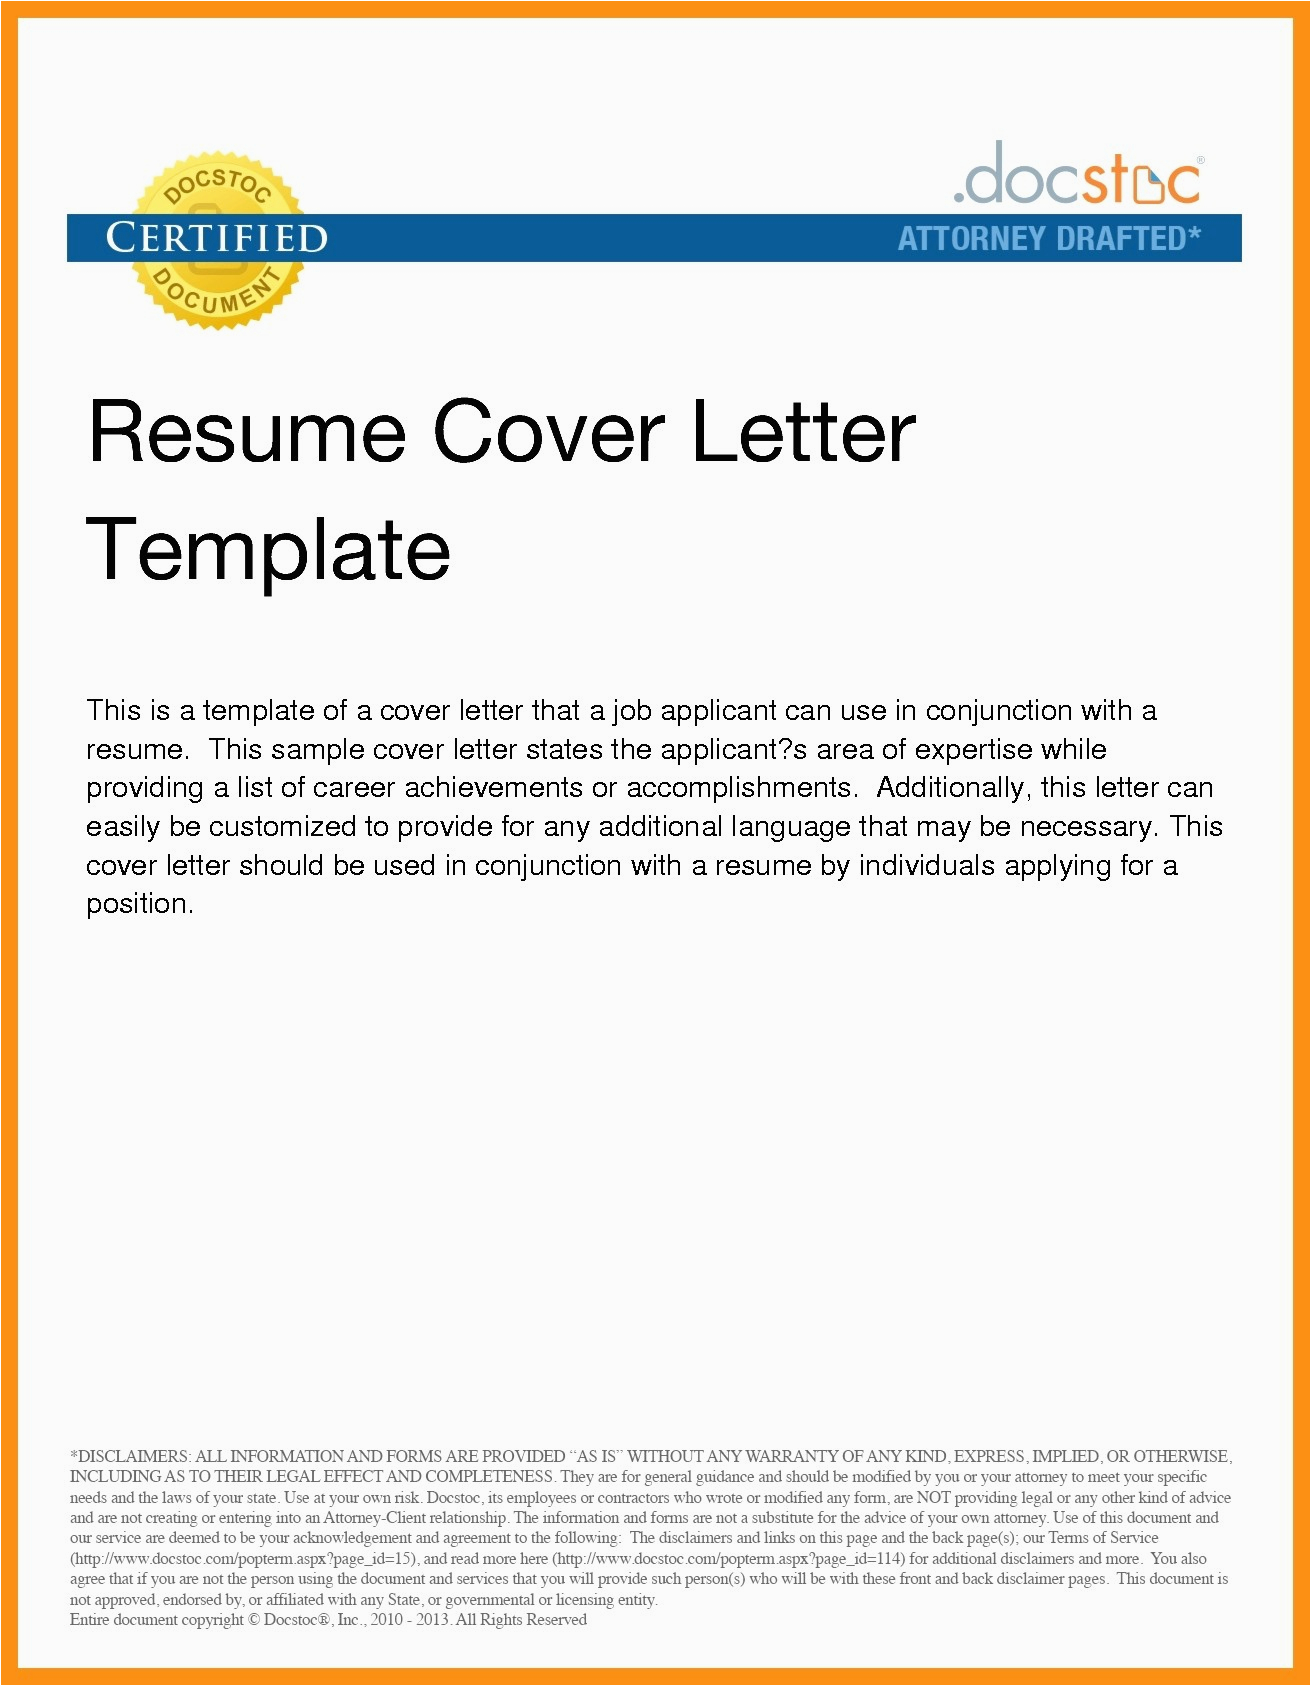 Sample Letter Sending Resume Through Email Sending Resume and Cover Letter by Email Collection